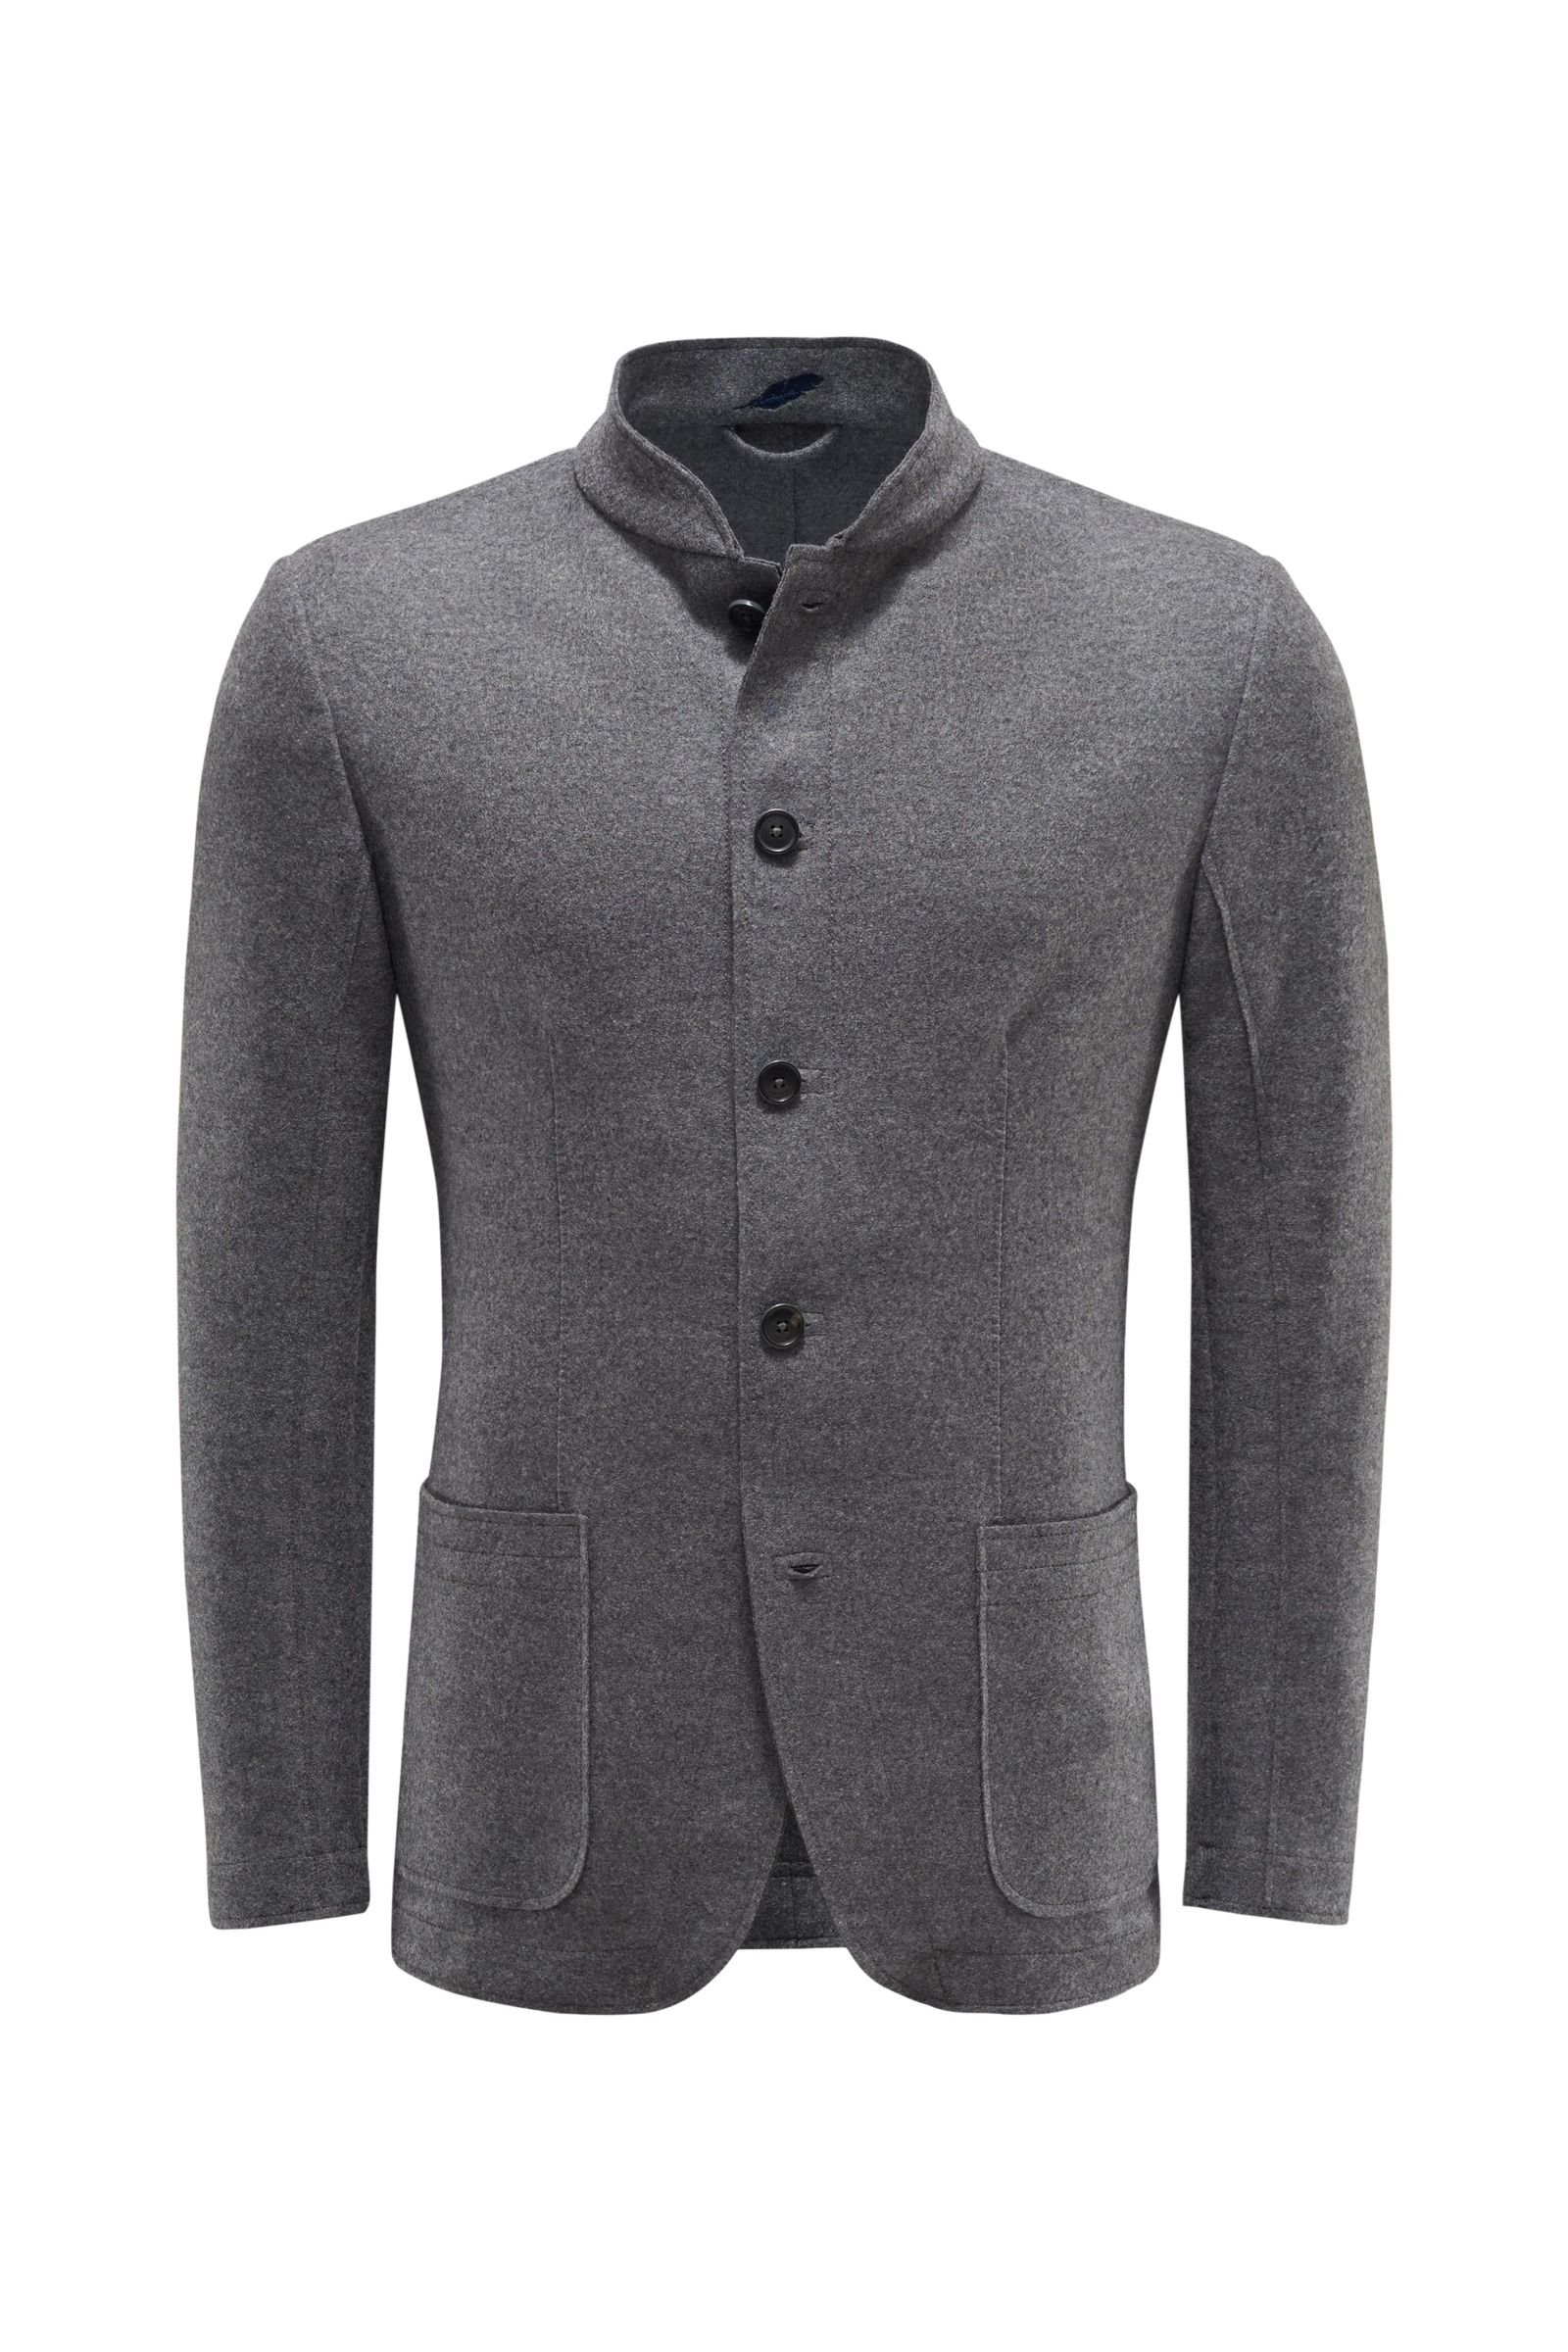 Loden jacket dark grey